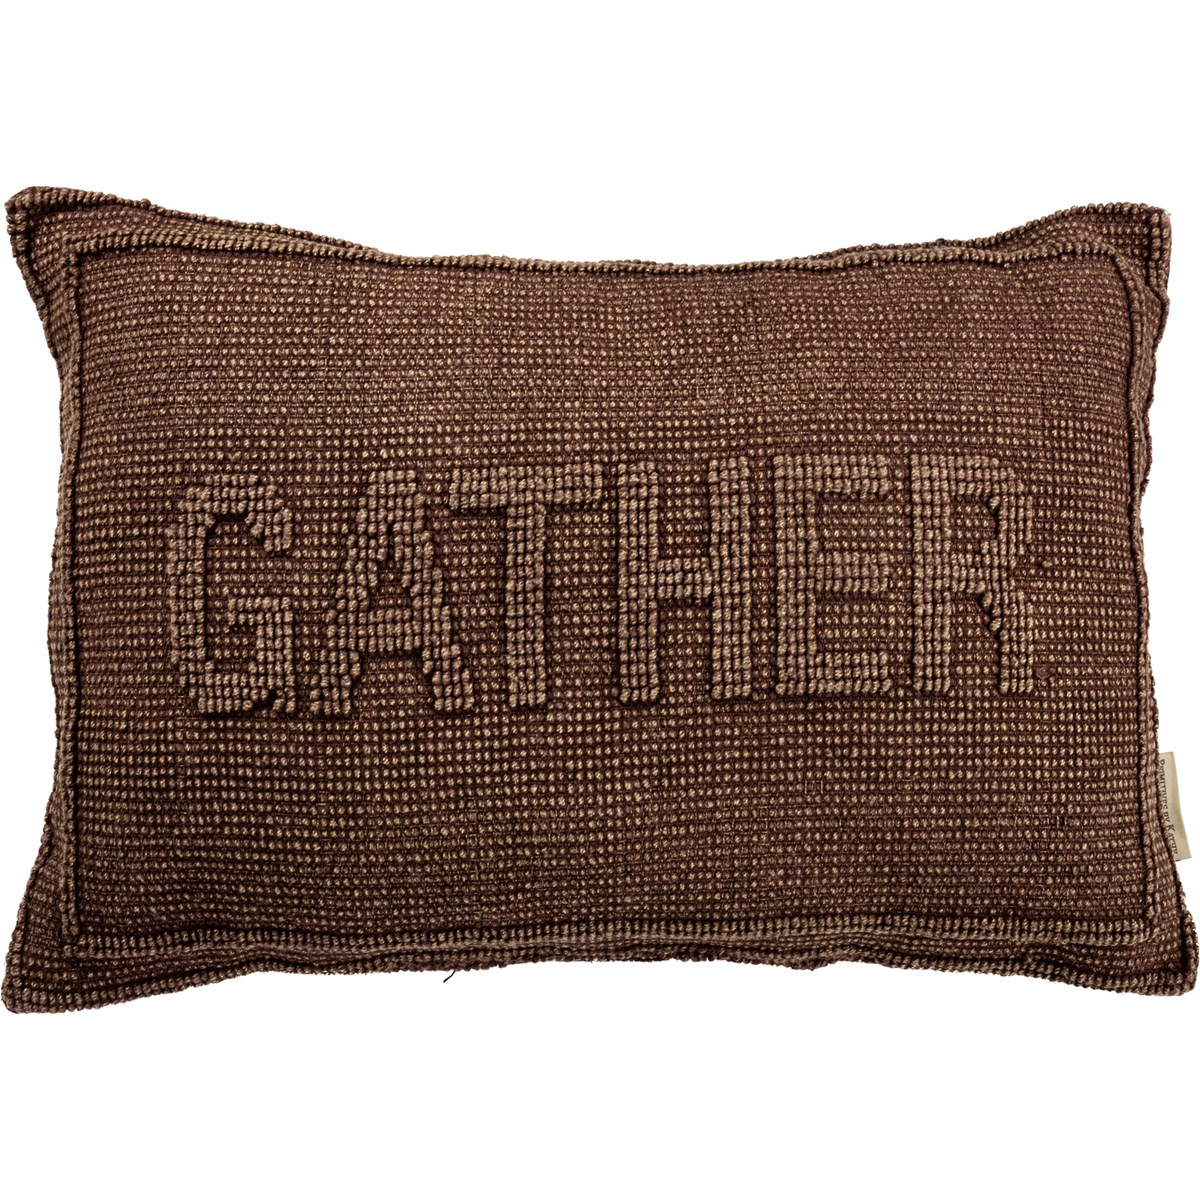 Knobby Gather Pillow - Cotton, Velvet, Zipper